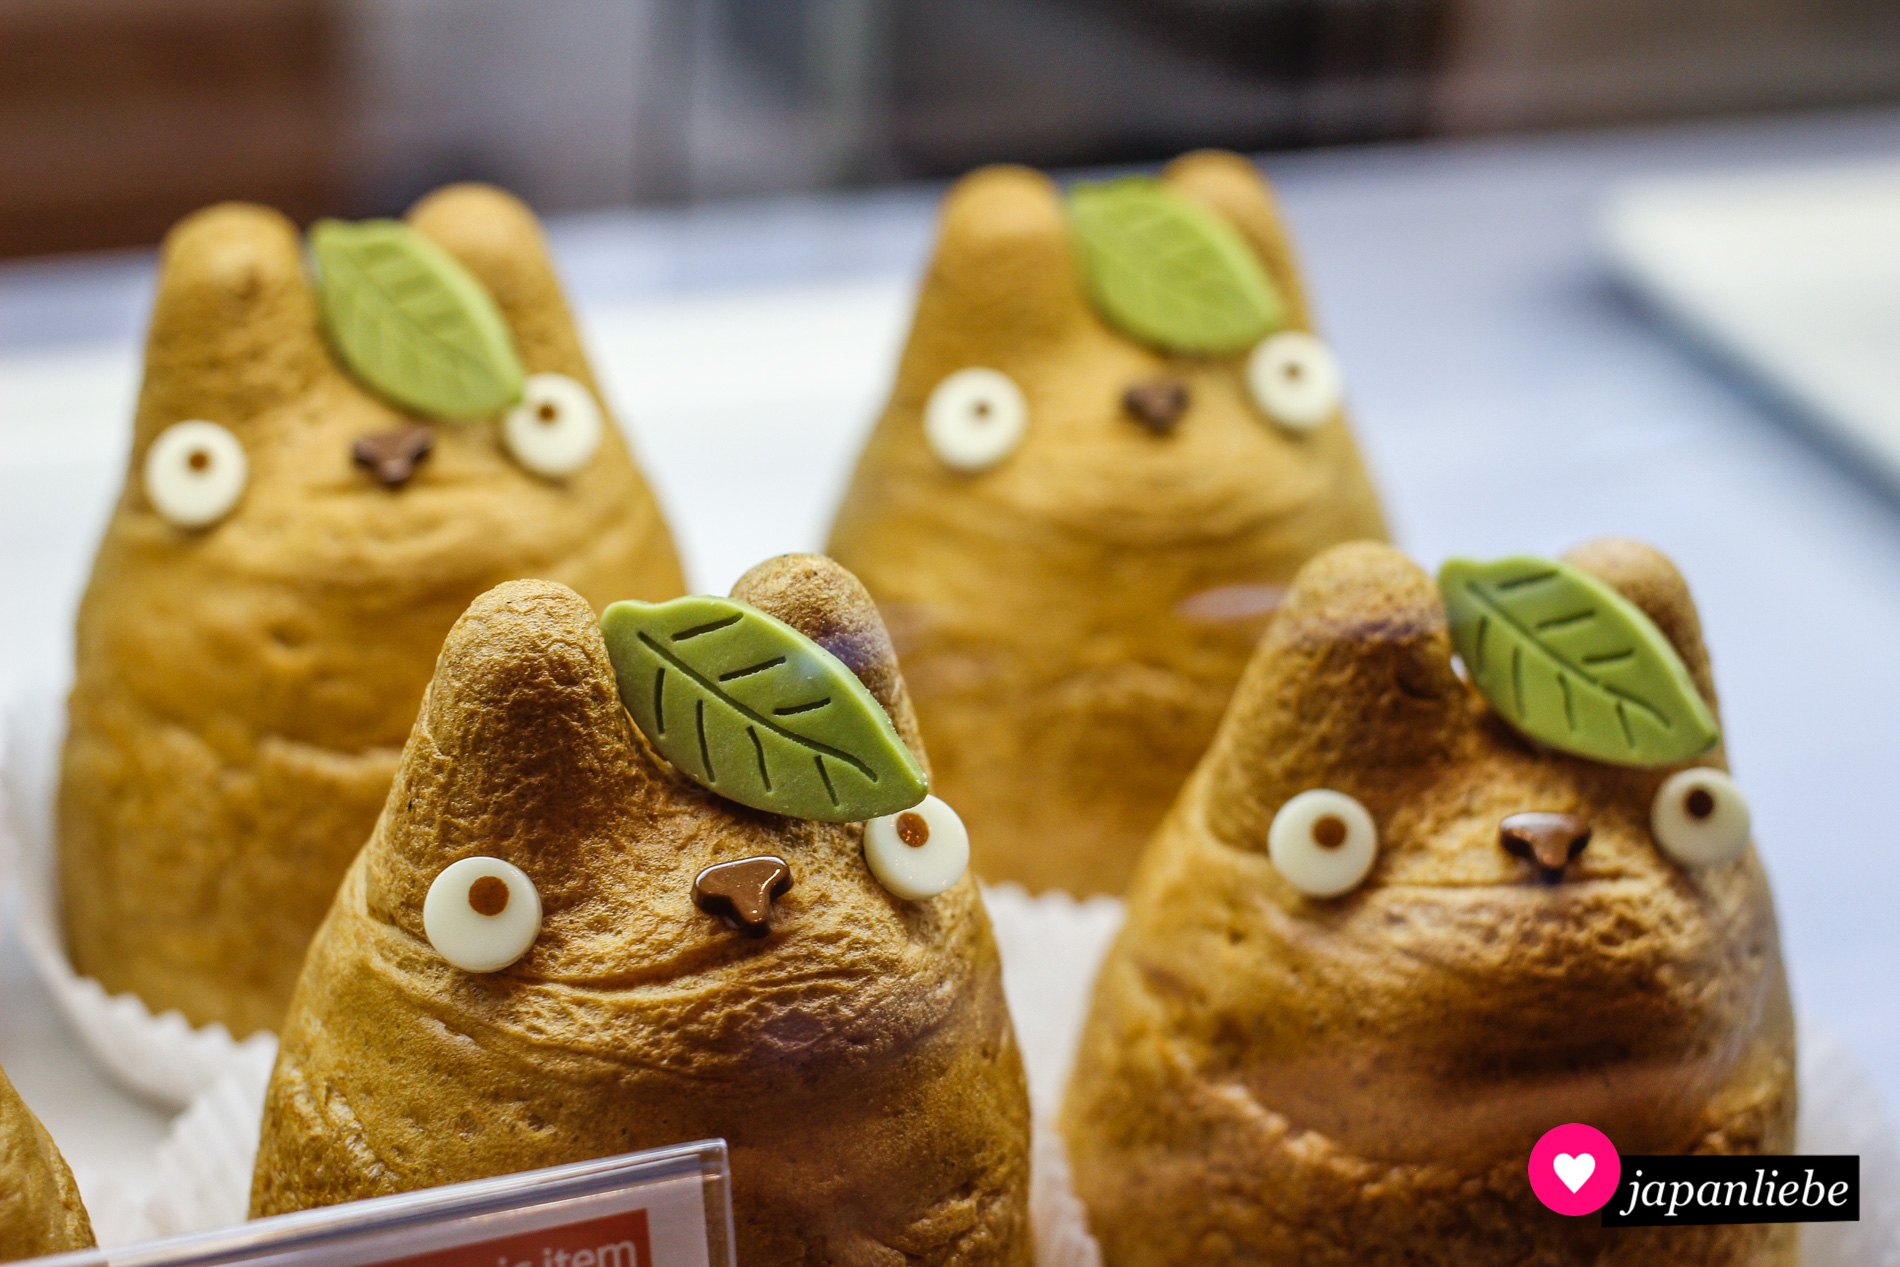 Die „Shirohige Cream Puff Factory“ ist eine bezaubernde Bäckerei in Tōkyō, die mit Windbeuteln im Totoro-Design berühmt geworden sind.